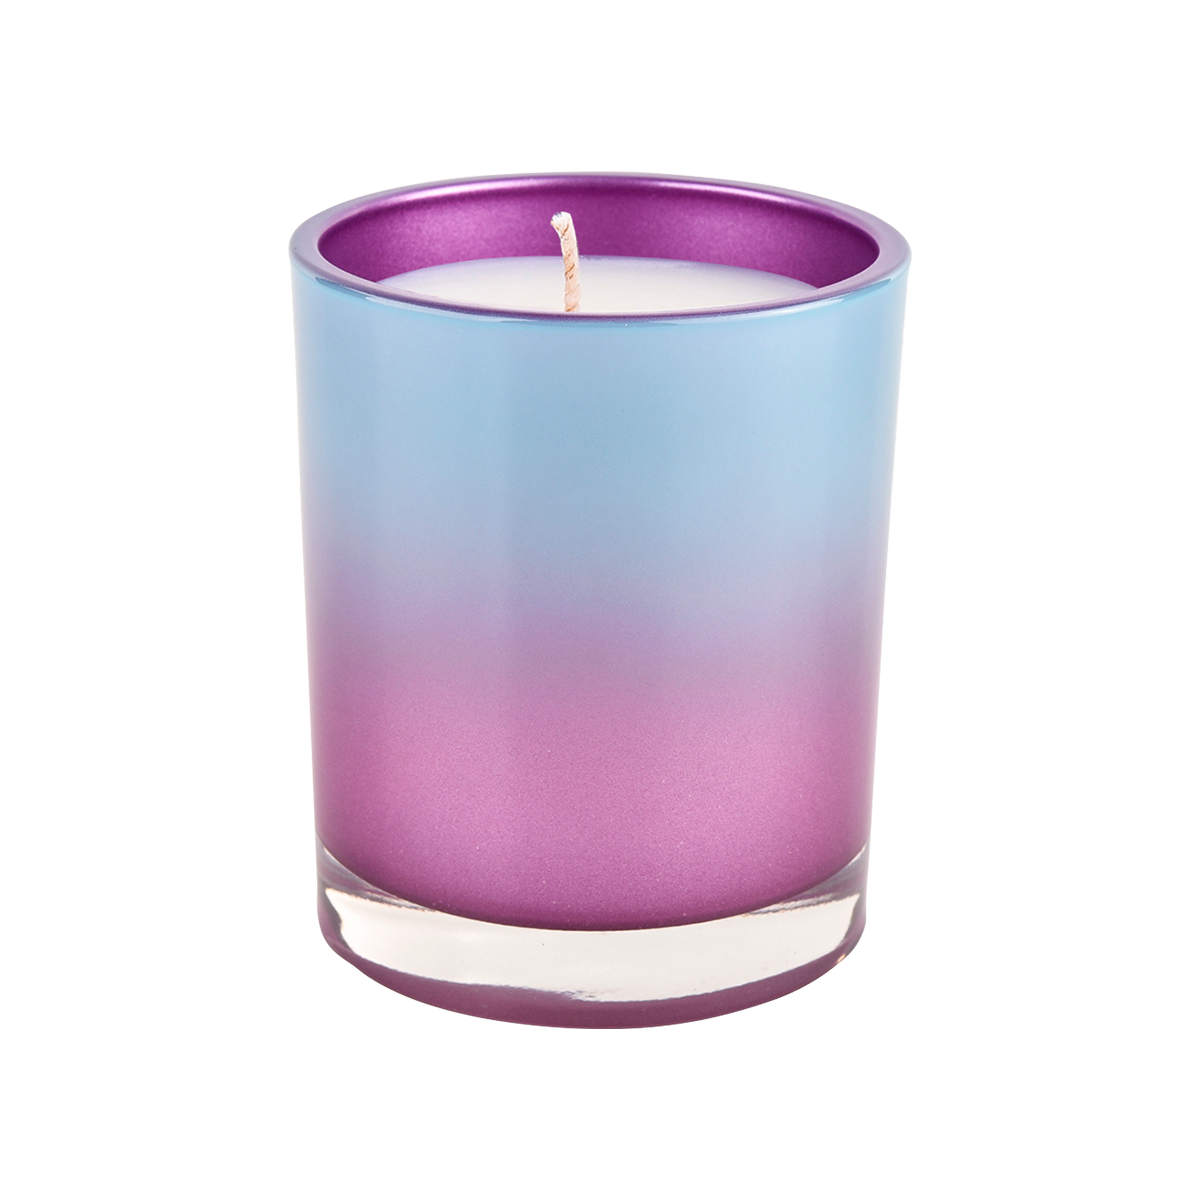 Contenedor de vela de vidrio de borde recto de 10 oz Decoración azul degradado púrpura